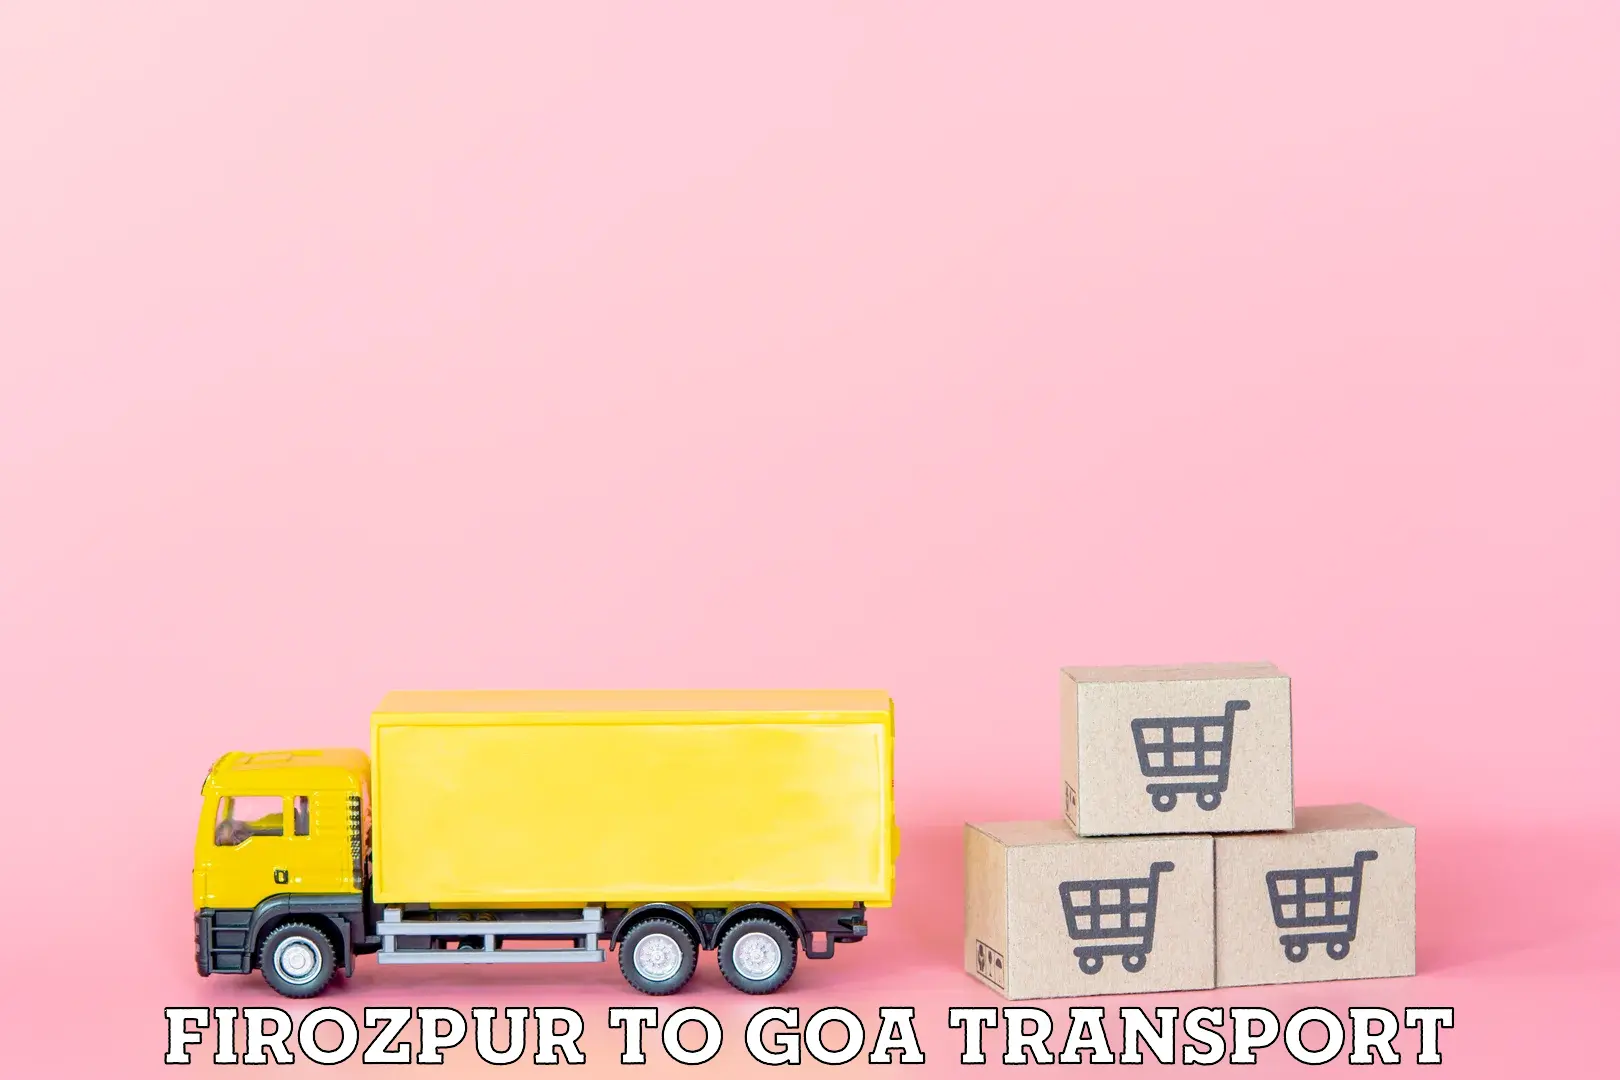 Nearest transport service Firozpur to Goa